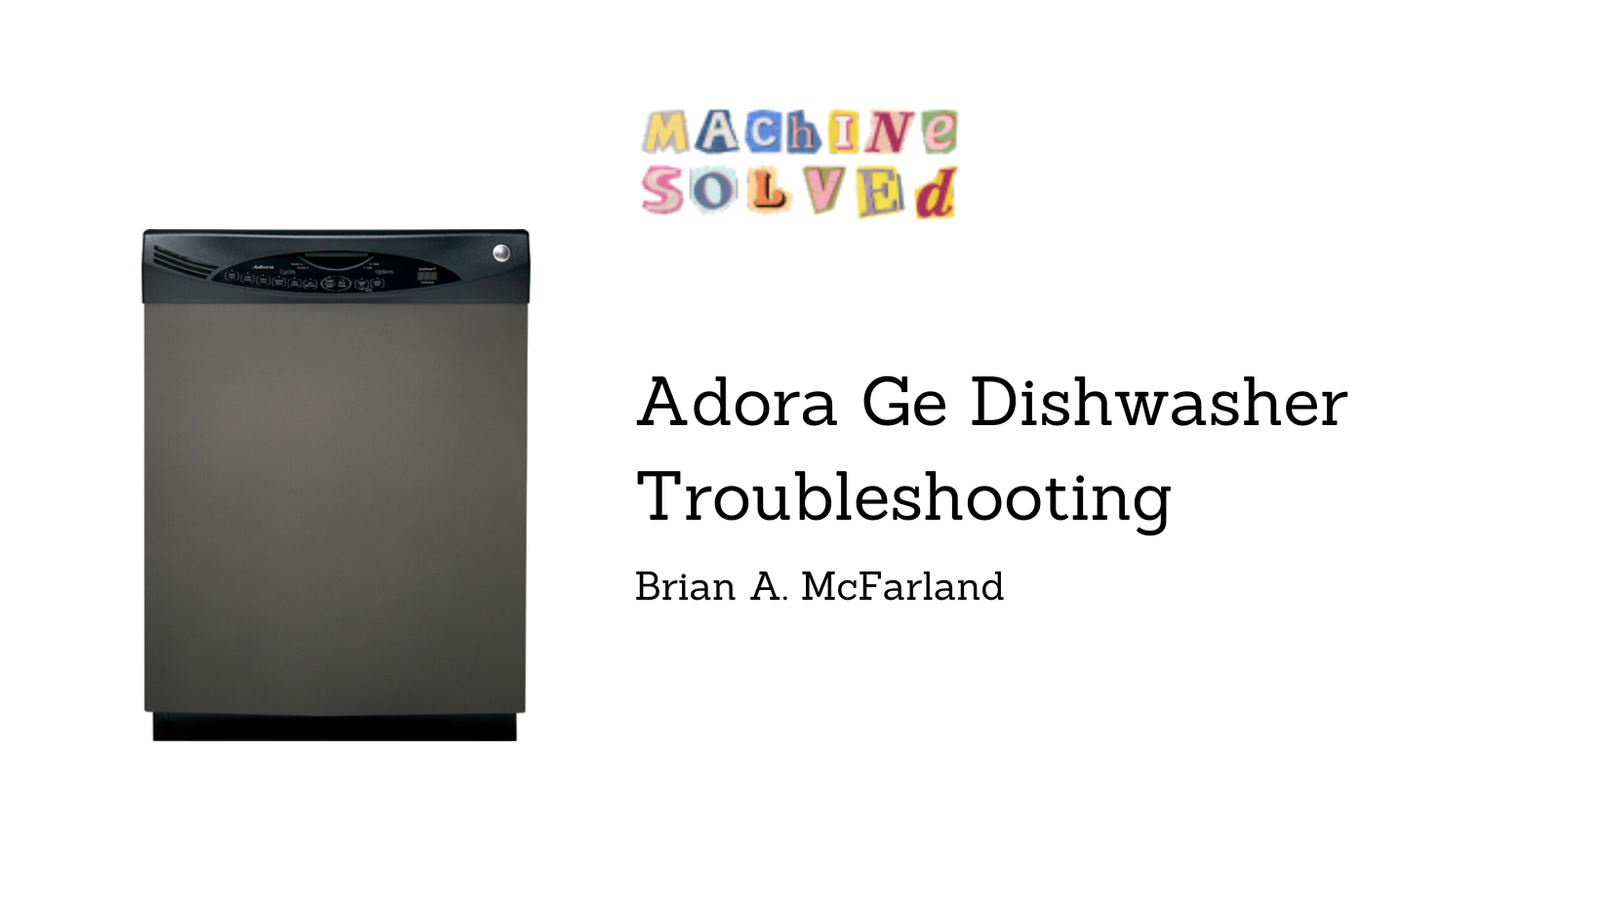 Adora Ge Dishwasher Troubleshooting